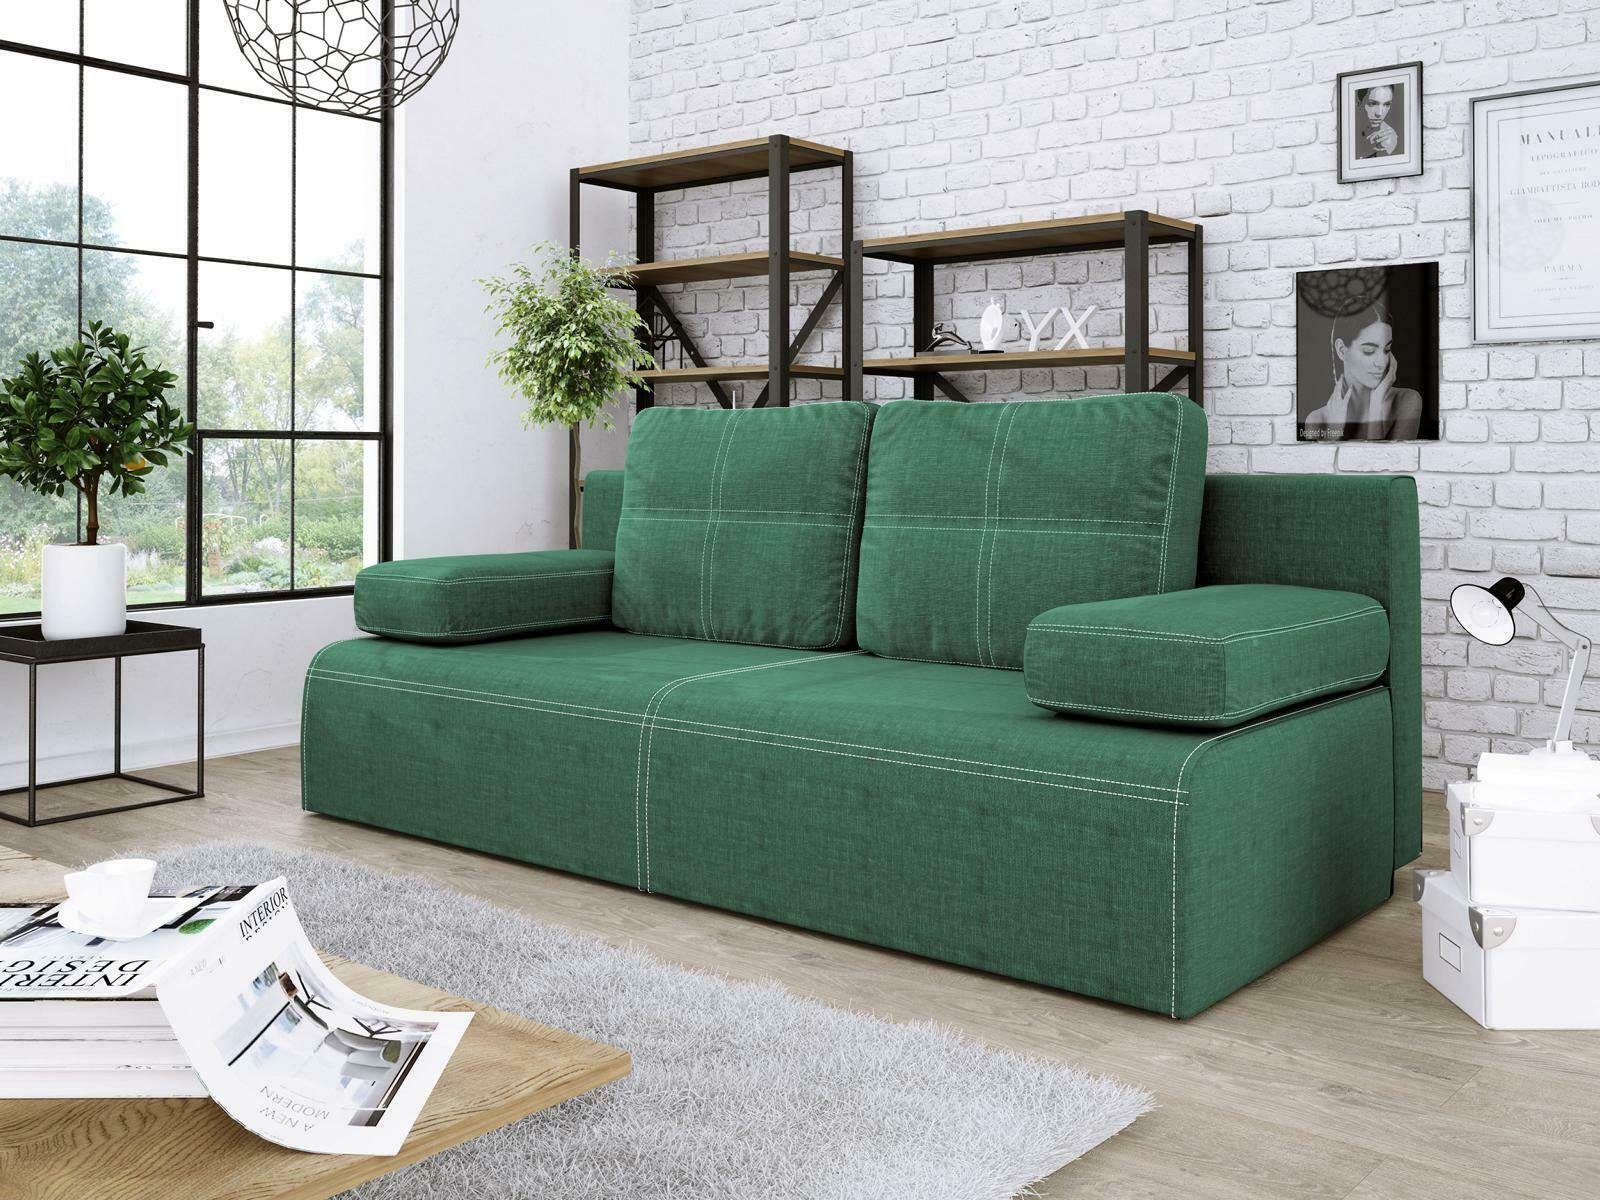 JVmoebel Sofa Grüner Dreisitzer Stoffsofa Luxus Design Möbel Couch Neu, Made in Europe